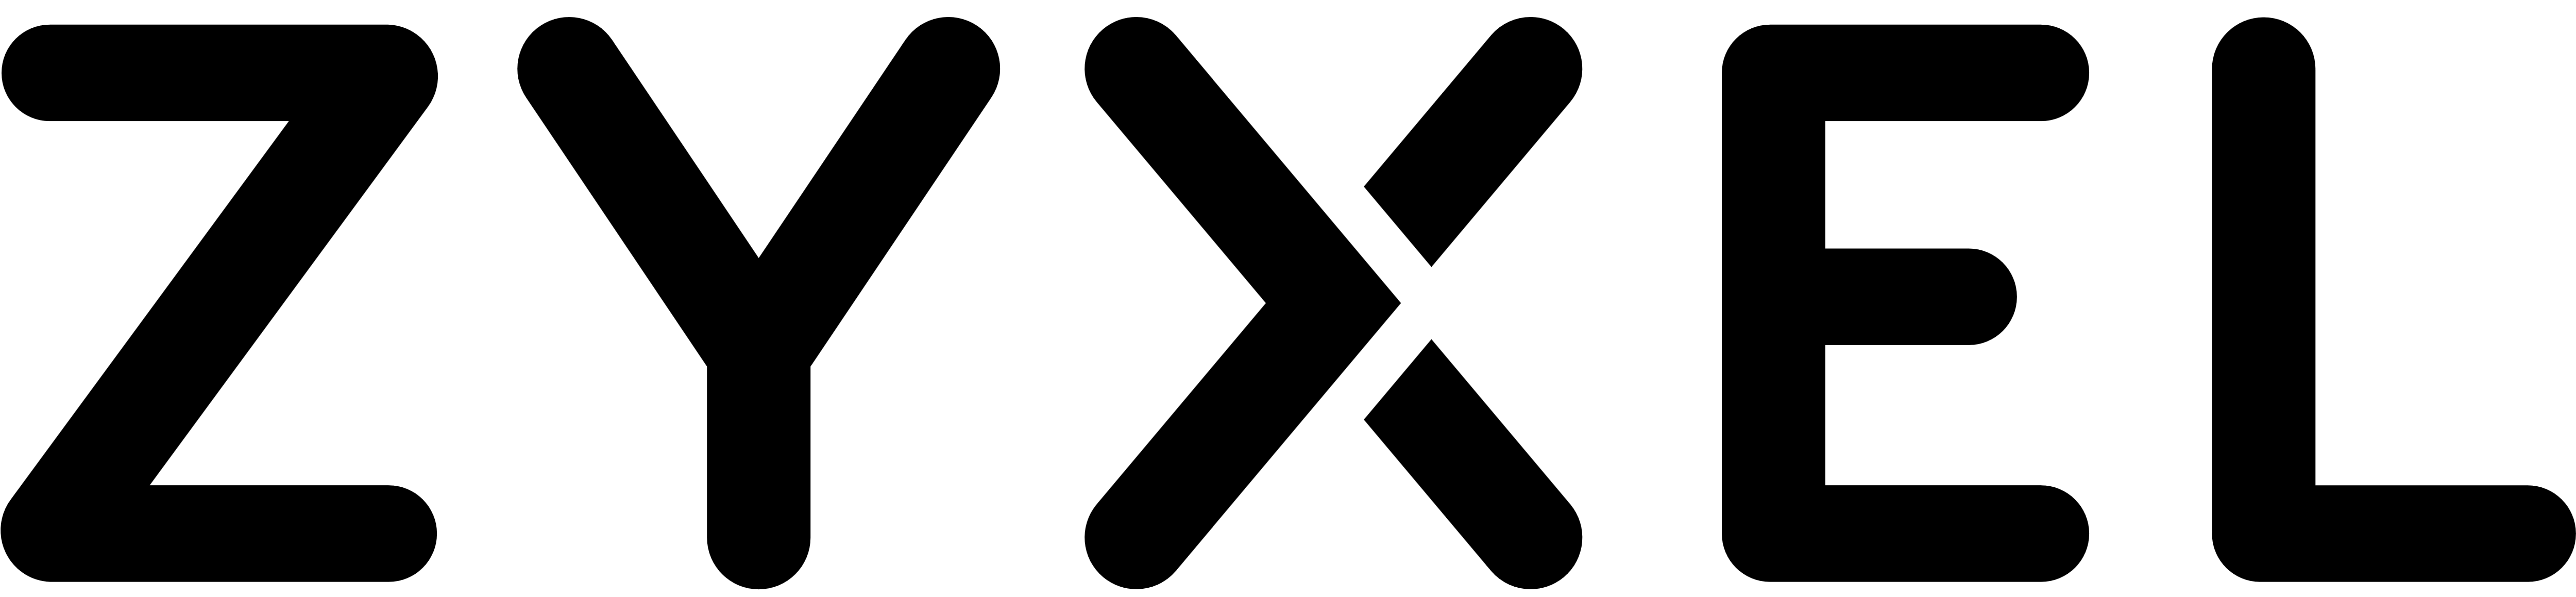 Logo von Zyxel in schwarzer Schrift auf weißem Hintergrund.